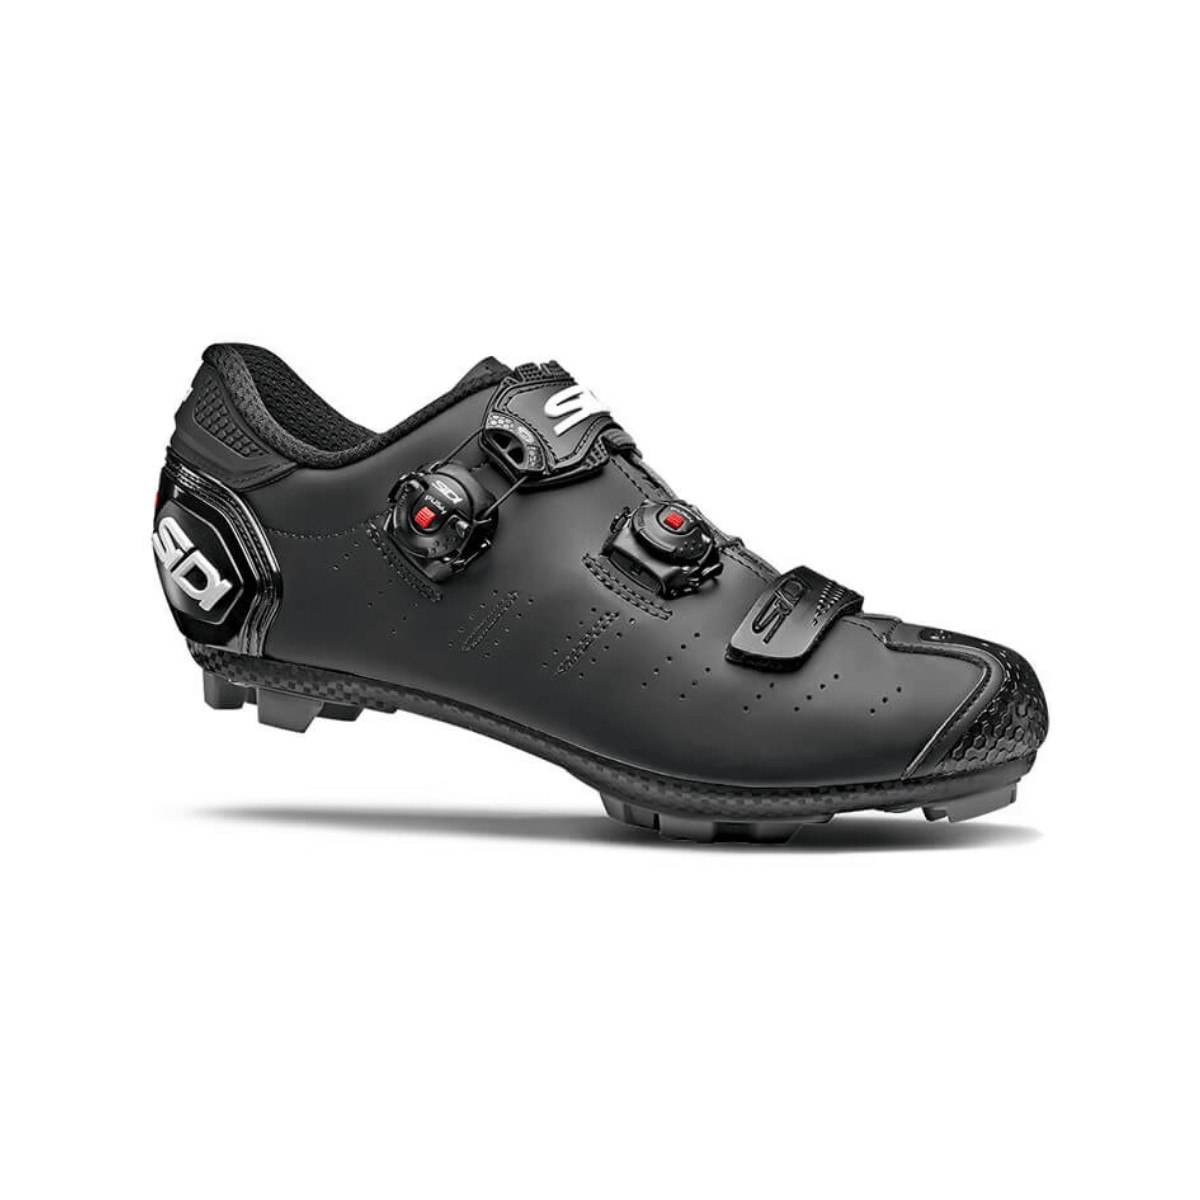 Sidi Dragon 5 MTB Shoes Matte Black, Size 46 - EUR